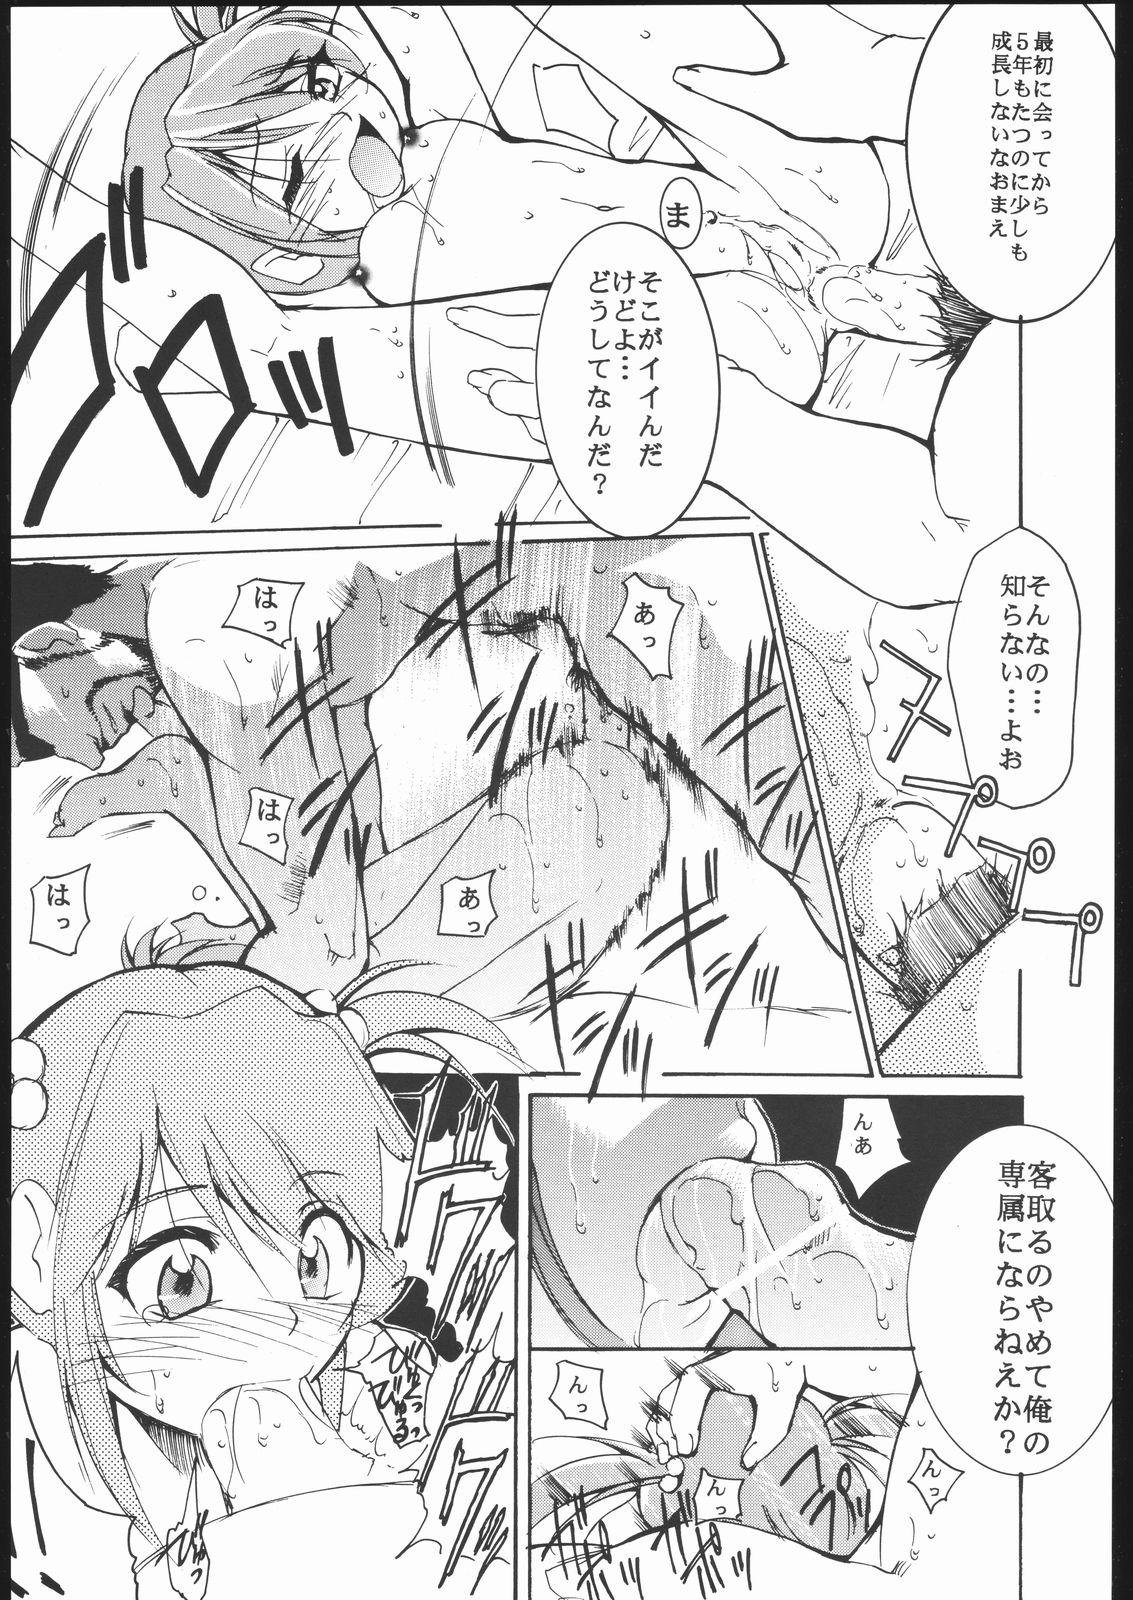 Sub Kami-Uta - Sakura taisen Jungle wa itsumo hare nochi guu Edging - Page 8